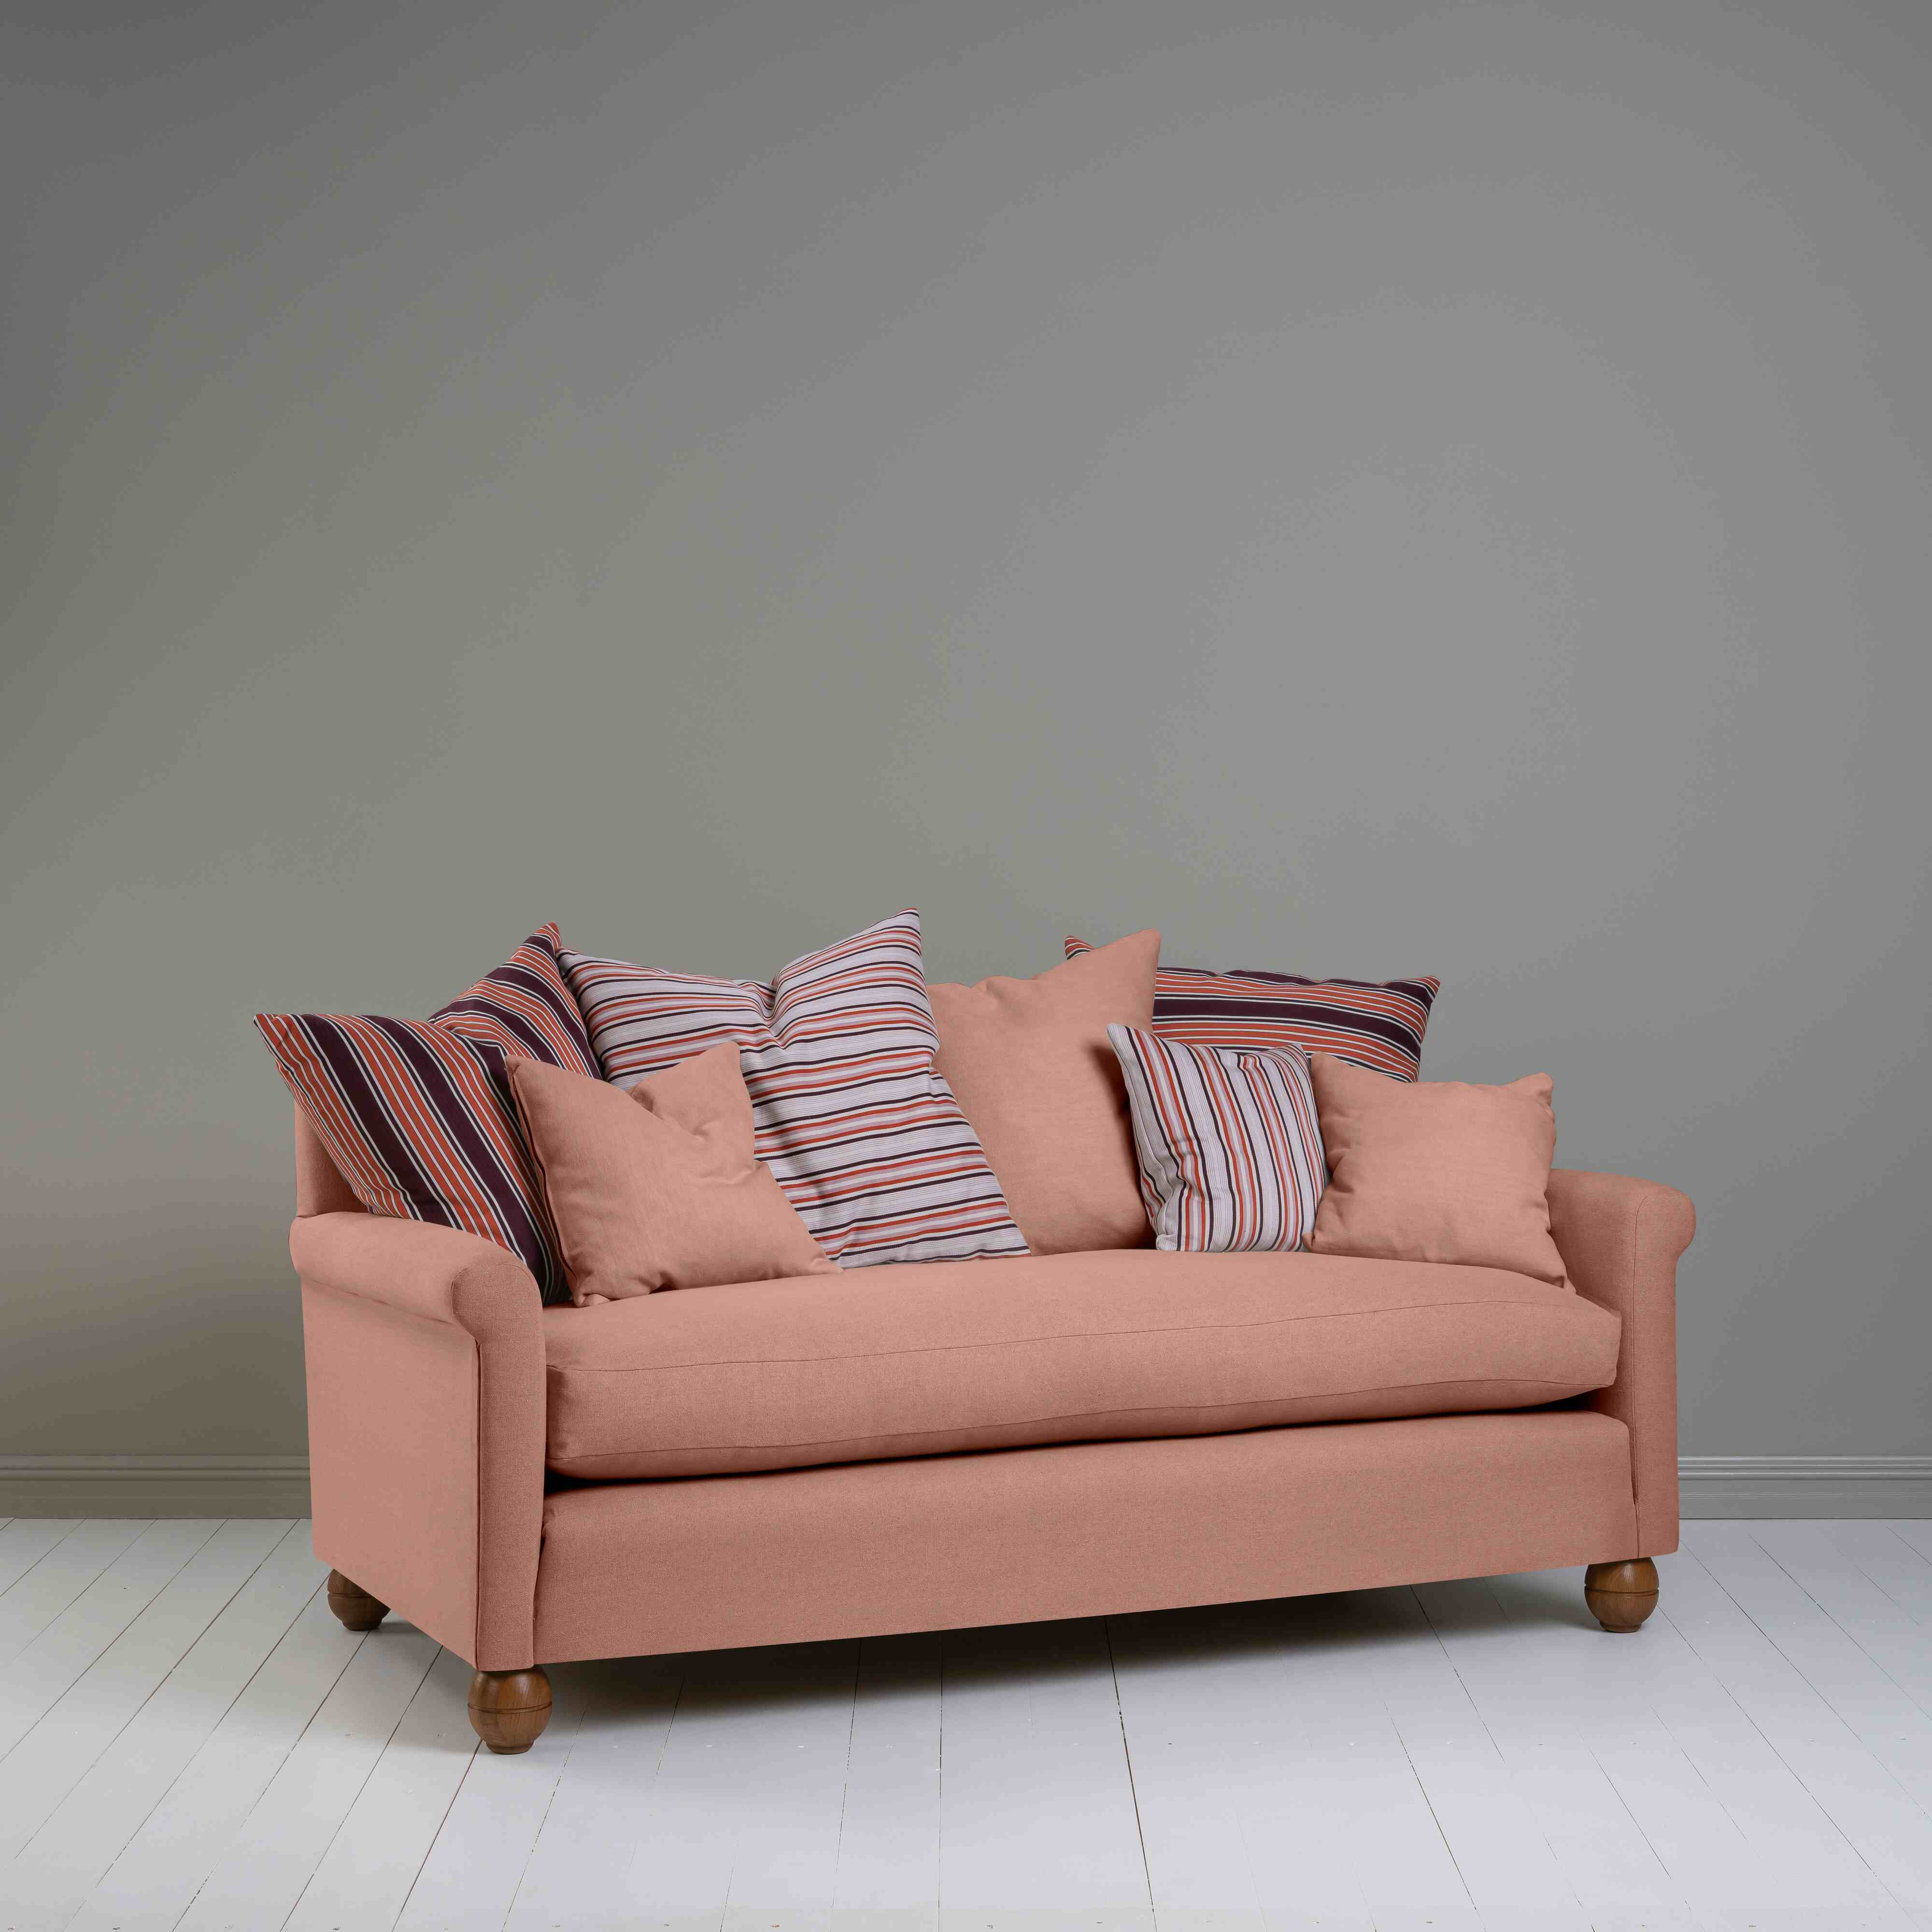  Idler 3 Seater Sofa in Laidback Linen Roseberry 